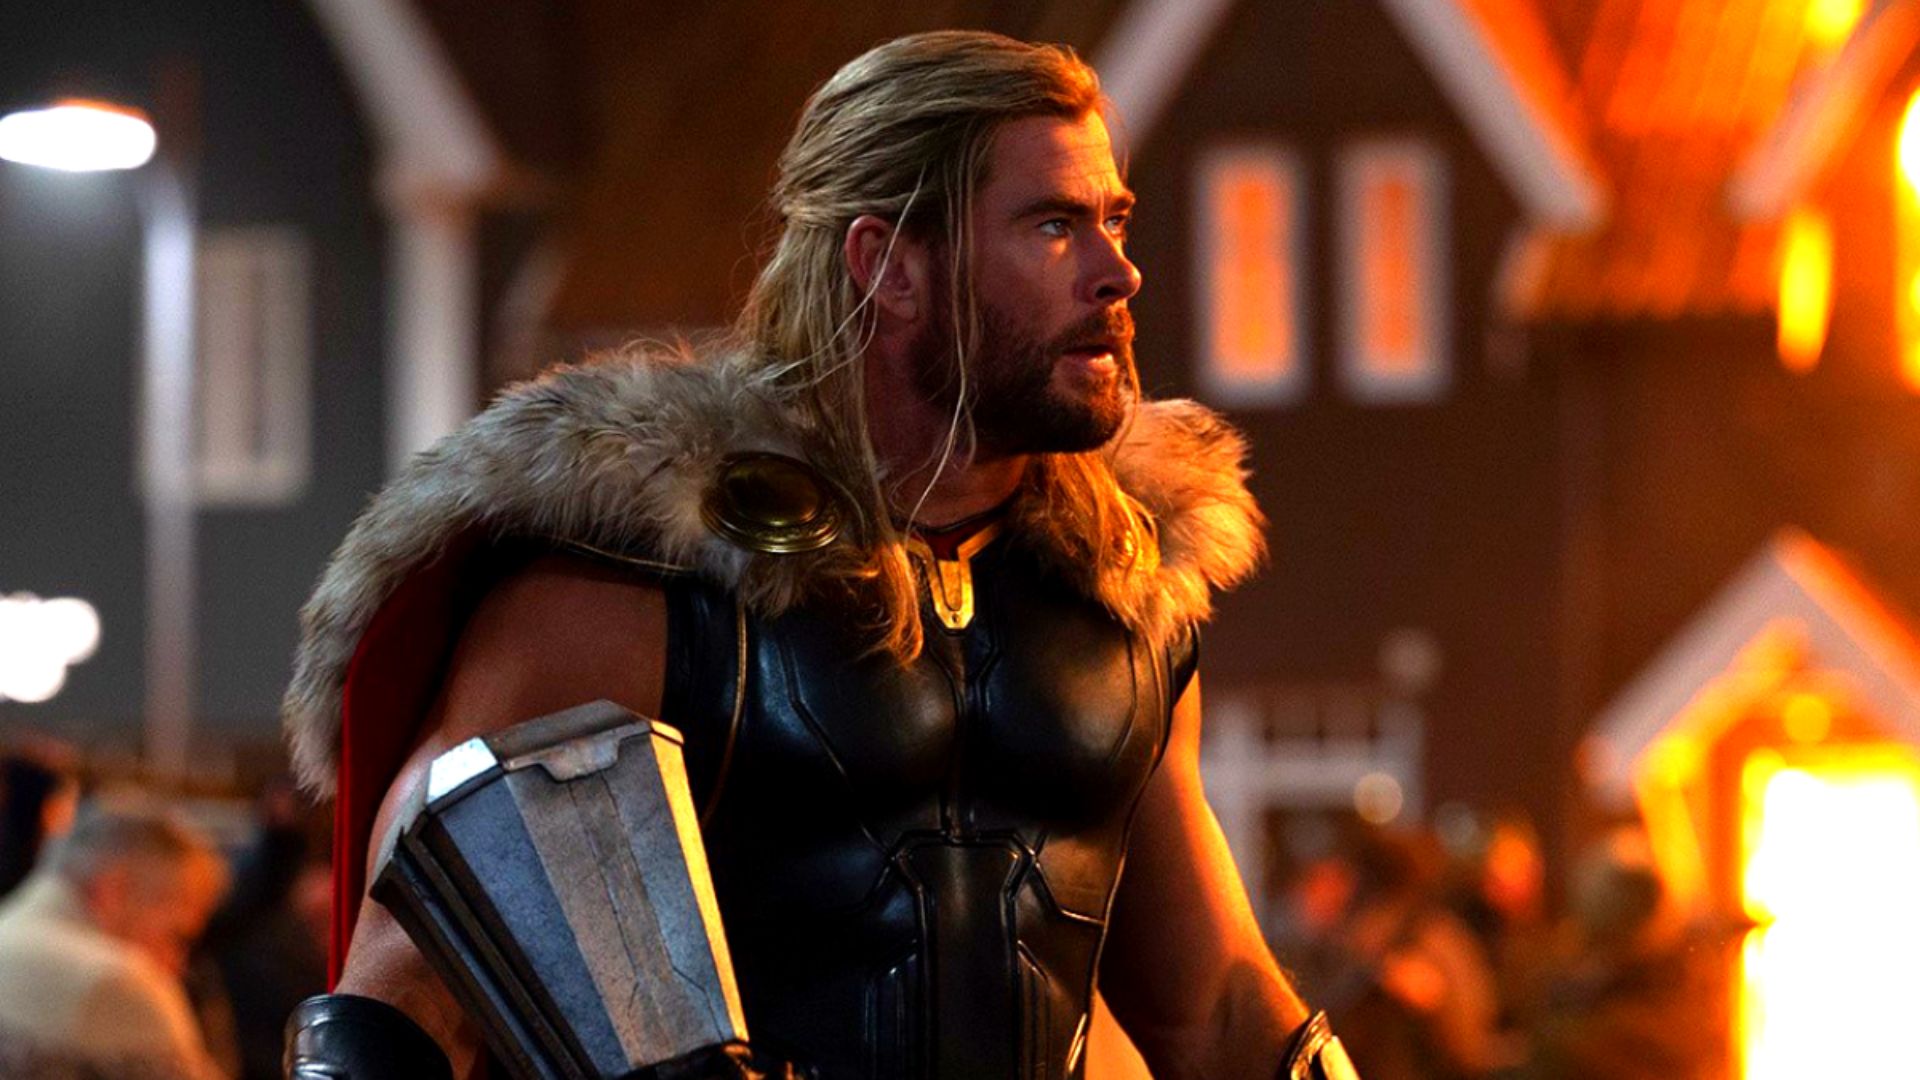 Thor: Amor e Trovão tem 3ª melhor estreia do ano nas bilheterias americanas